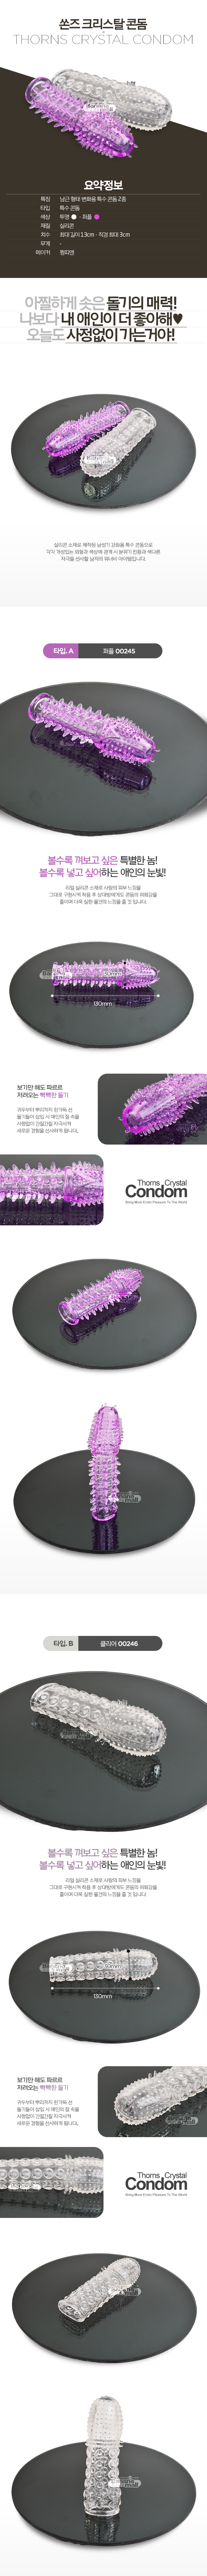 [특수 콘돔] 쏜즈 크리스탈 콘돔(Thorns Crystal Condom) - 00245